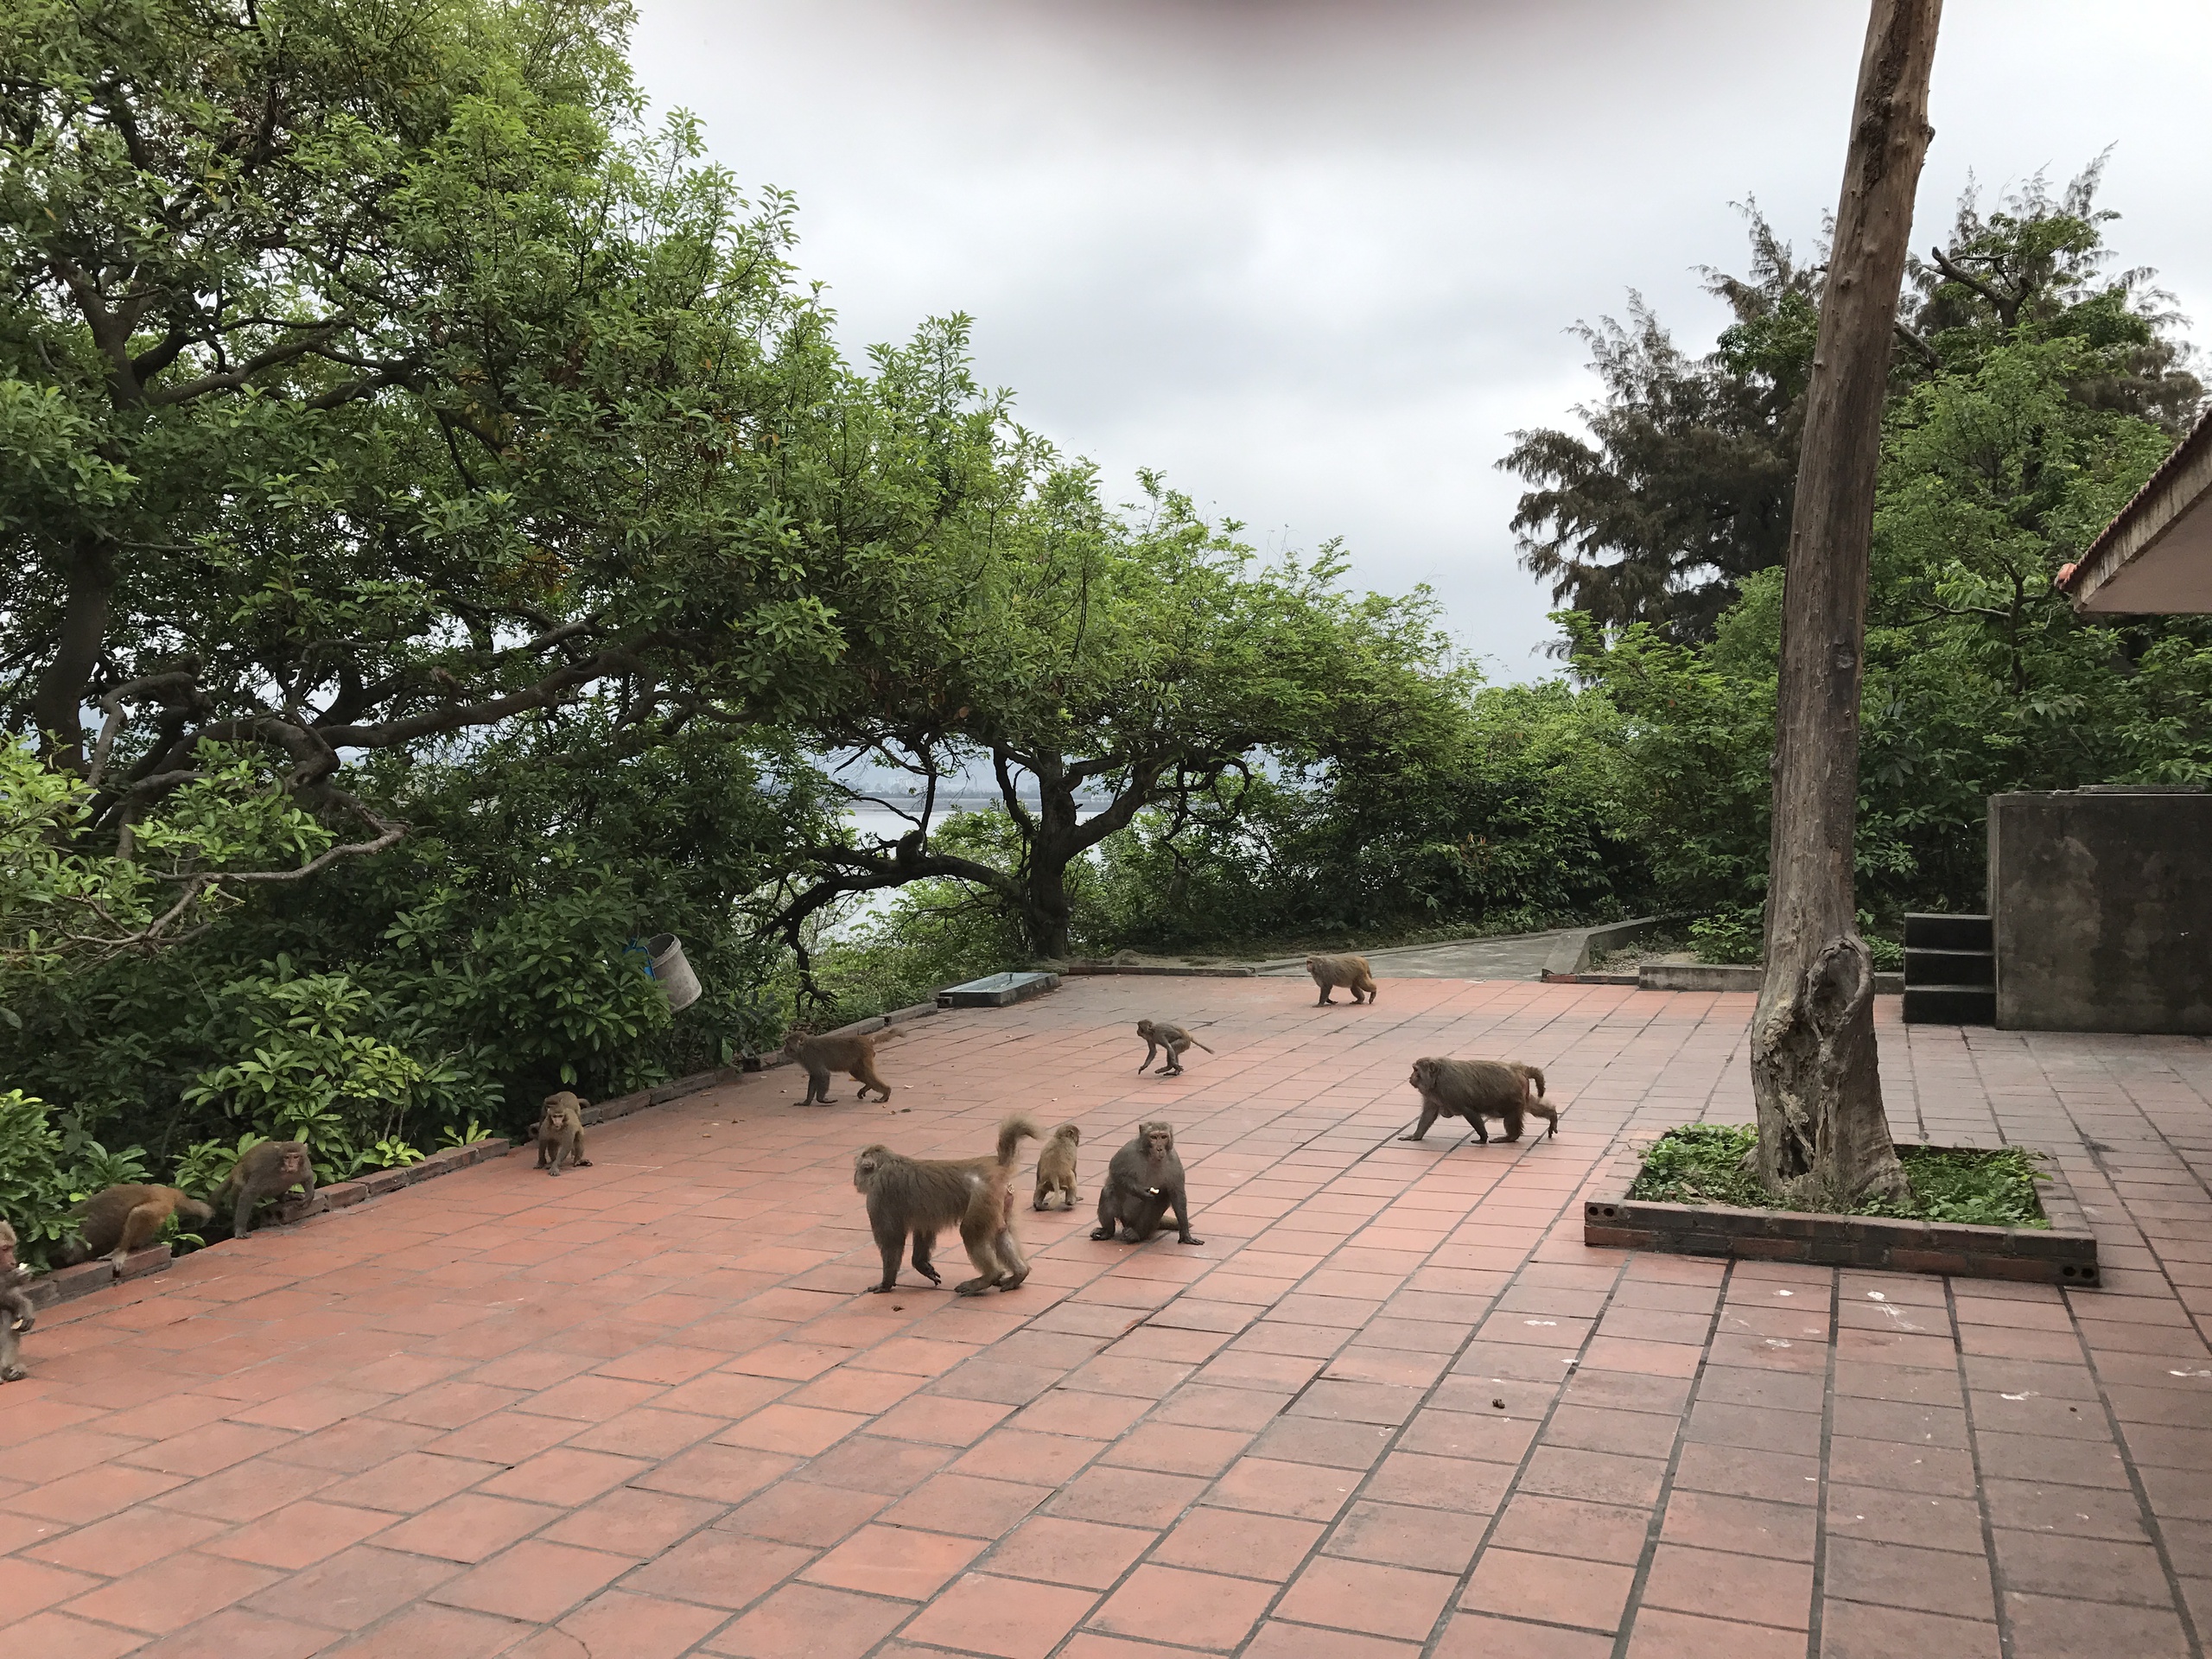 Đảo Rều - ngôi nhà của những chú khỉ hiến thân cho khoa học